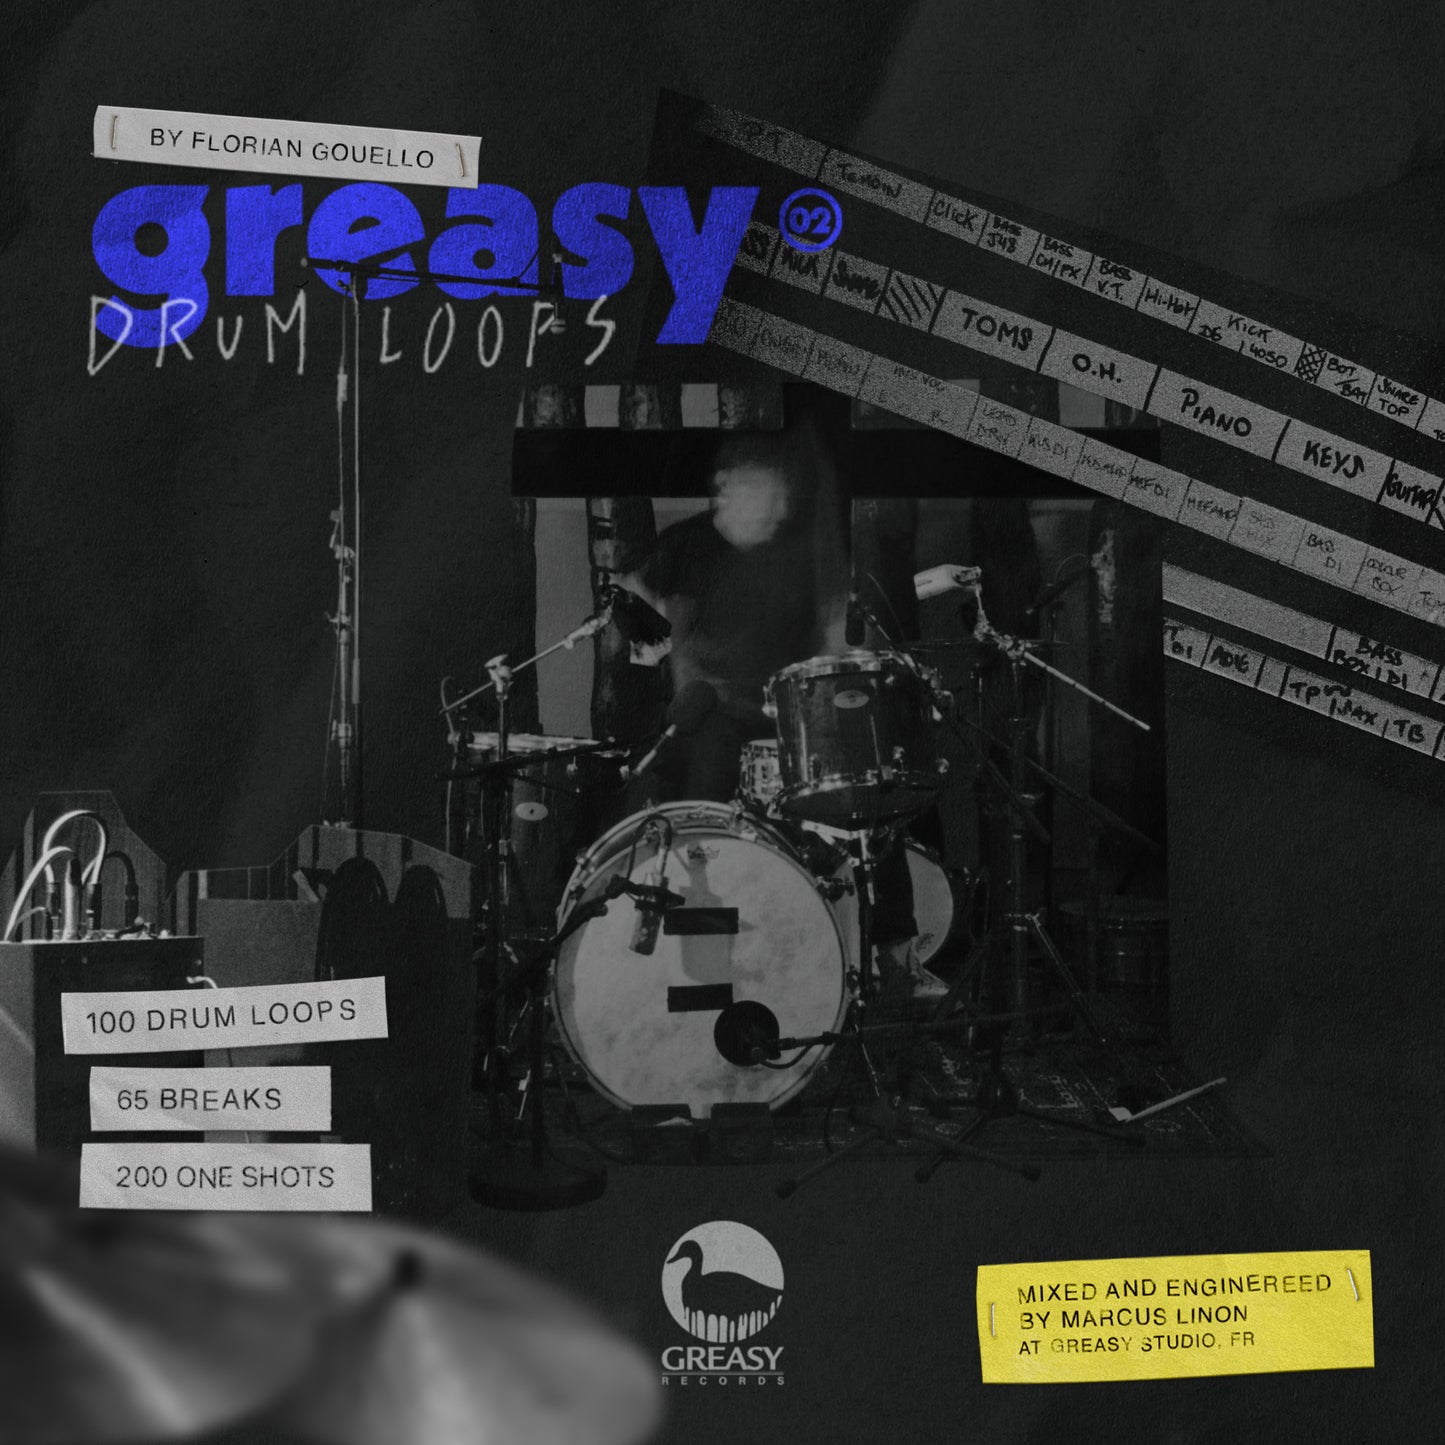 Greasy Drum Loops Vol.2